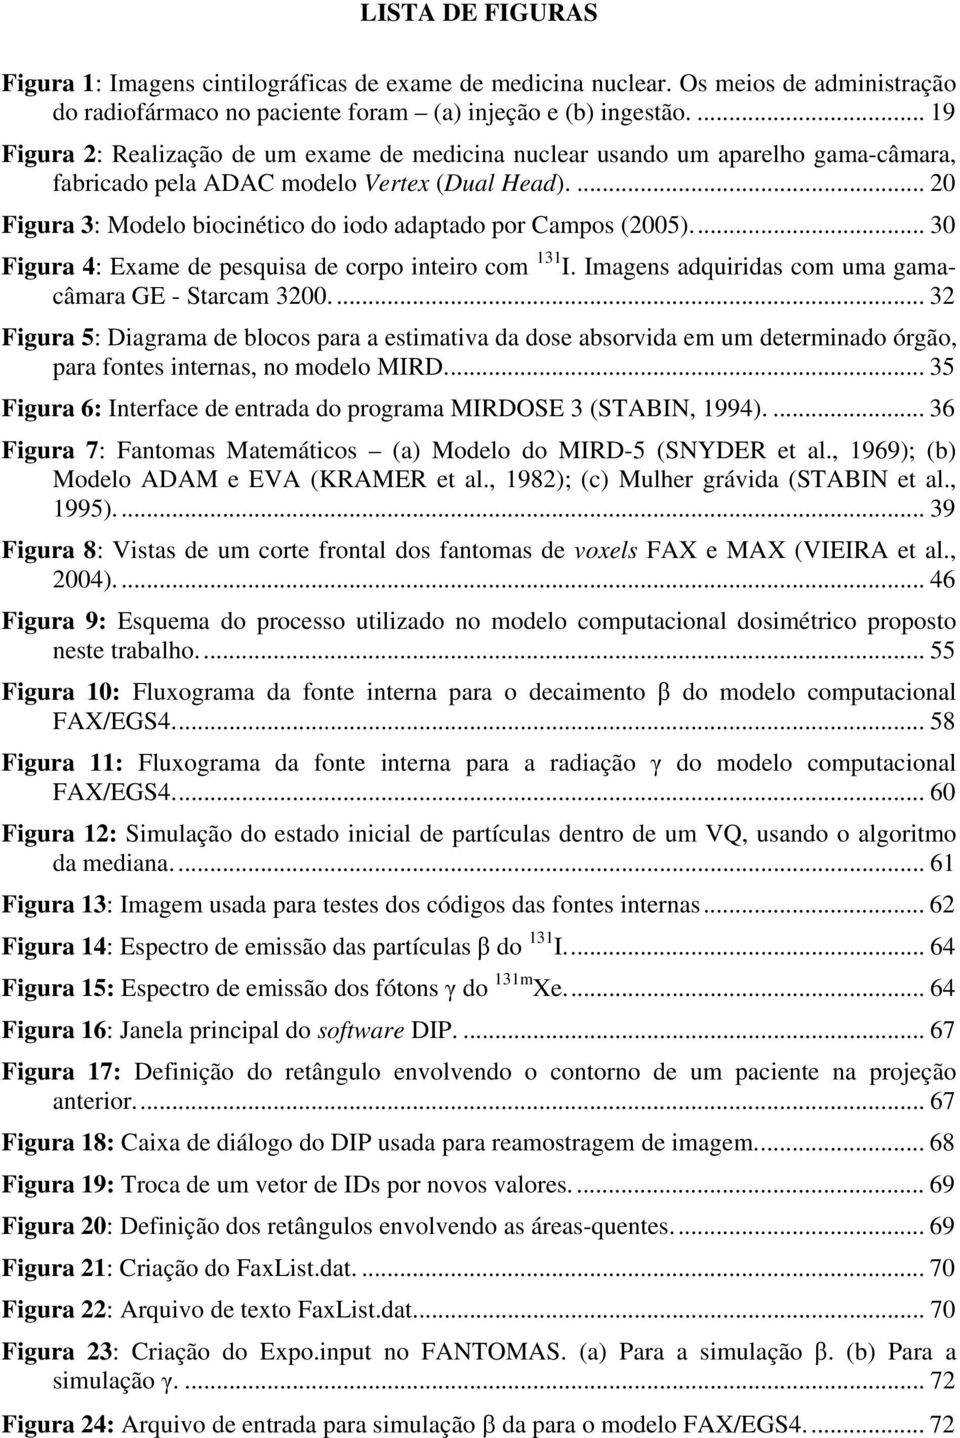 ... 20 Figura 3: Modelo biocinético do iodo adaptado por Campos (2005)... 30 Figura 4: Exame de pesquisa de corpo inteiro com 131 I. Imagens adquiridas com uma gamacâmara GE - Starcam 3200.